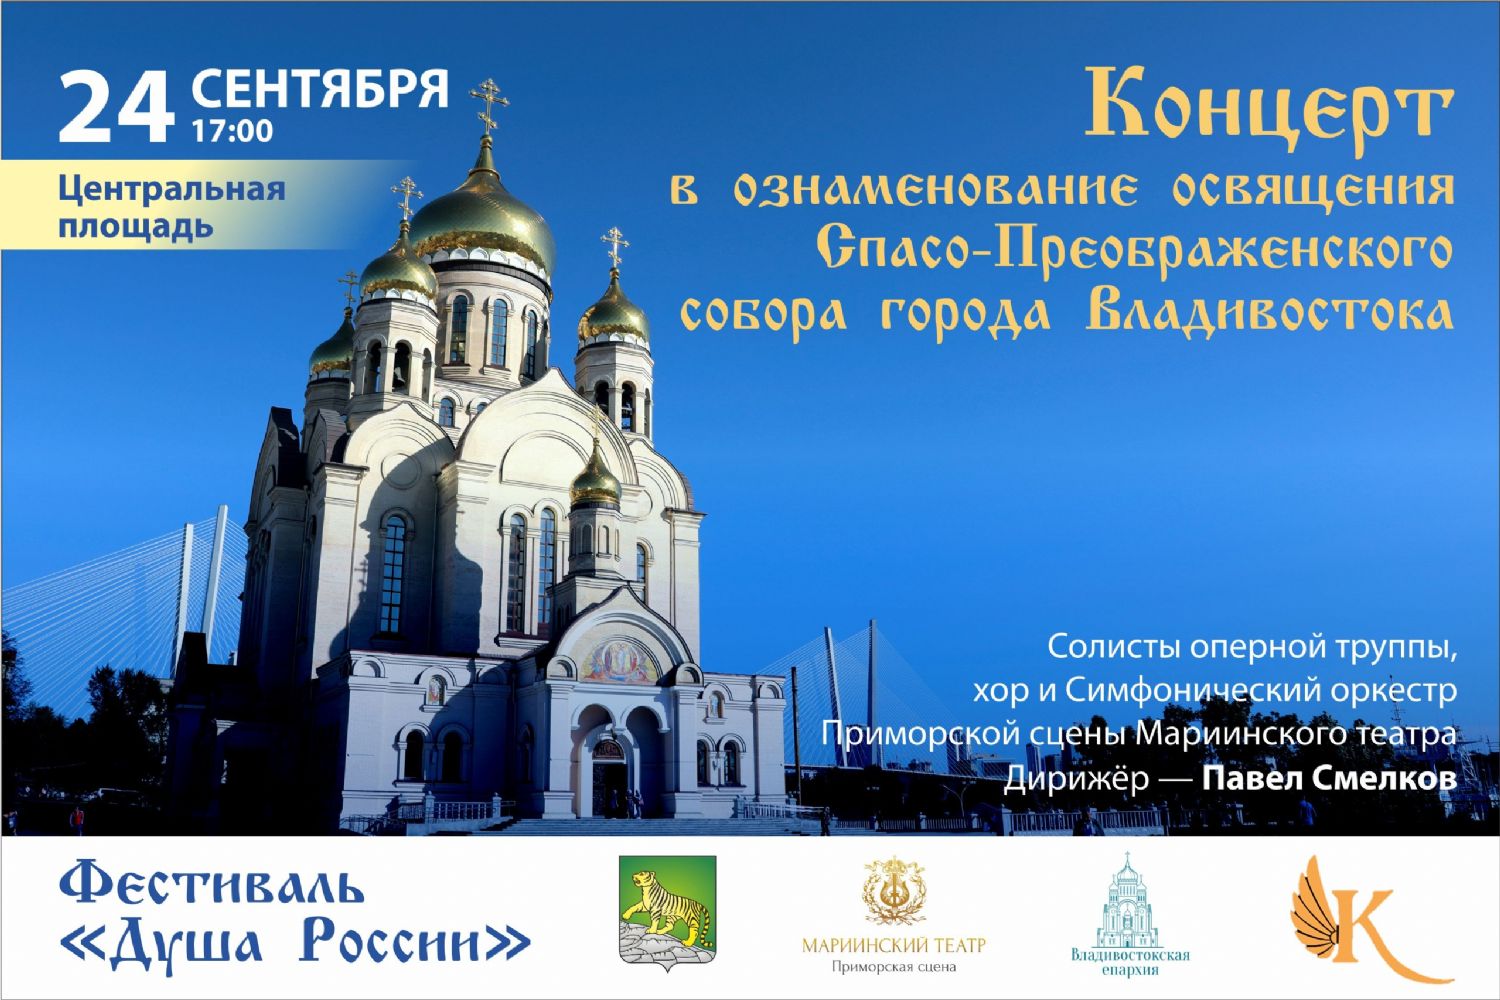 В ознаменование освящения Спасо-Преображенского собора на центральной площади Владивостока состоится концерт артистов Приморской сцены Мариинского театра